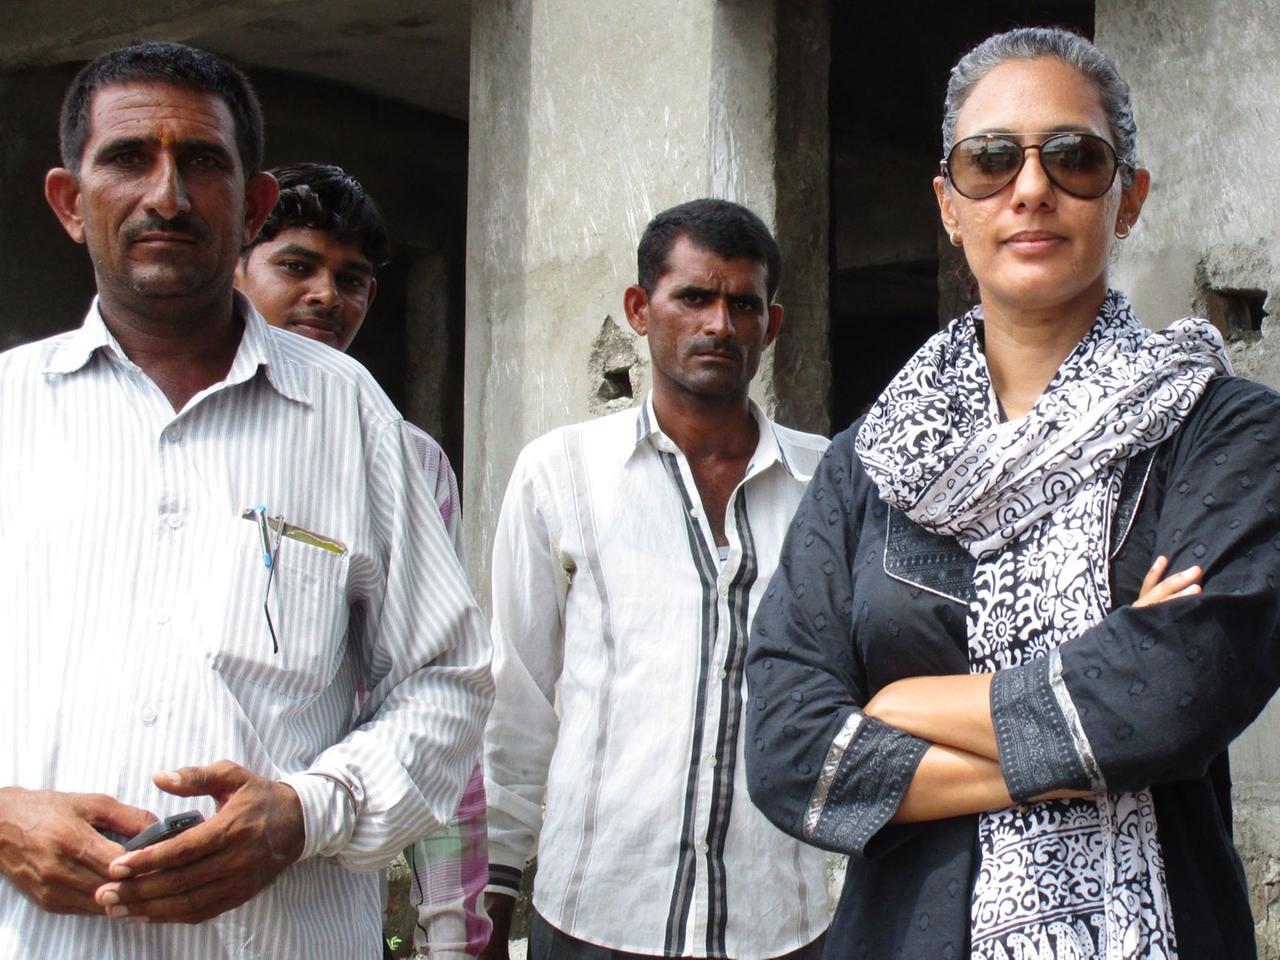 Die Bürgermeisterin des indischen Dorfes Soda, Chhavi Rajawat (r), gab für ihr Amt einen gutbezahlten Job auf.